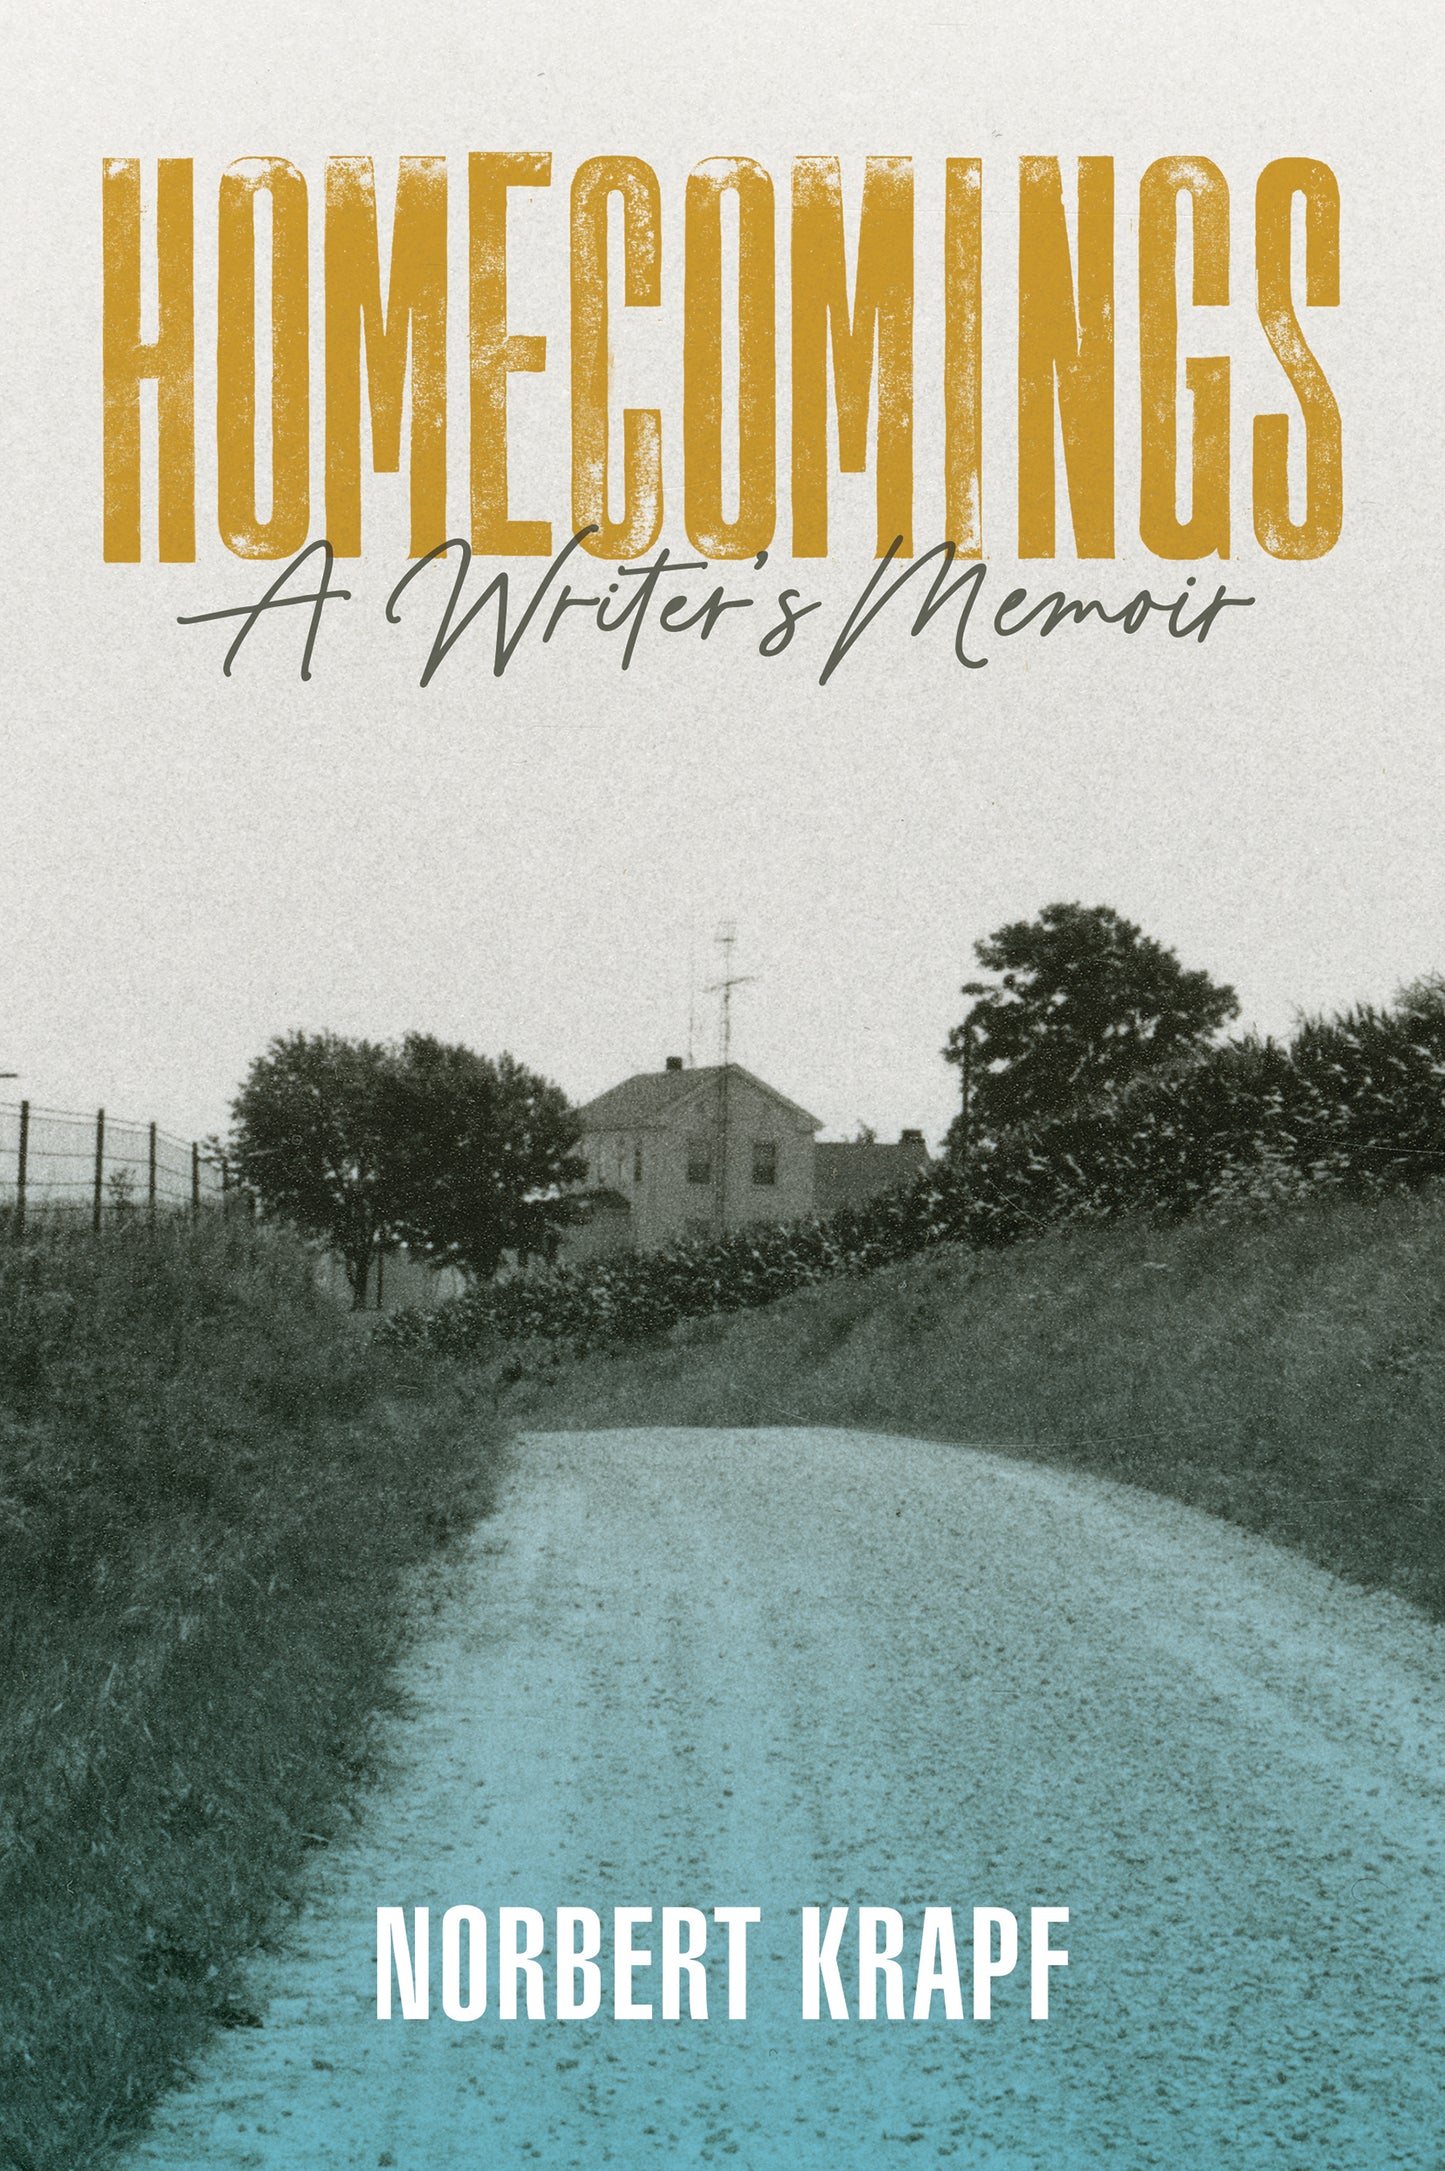 Homecomings: A Writer's Memoir